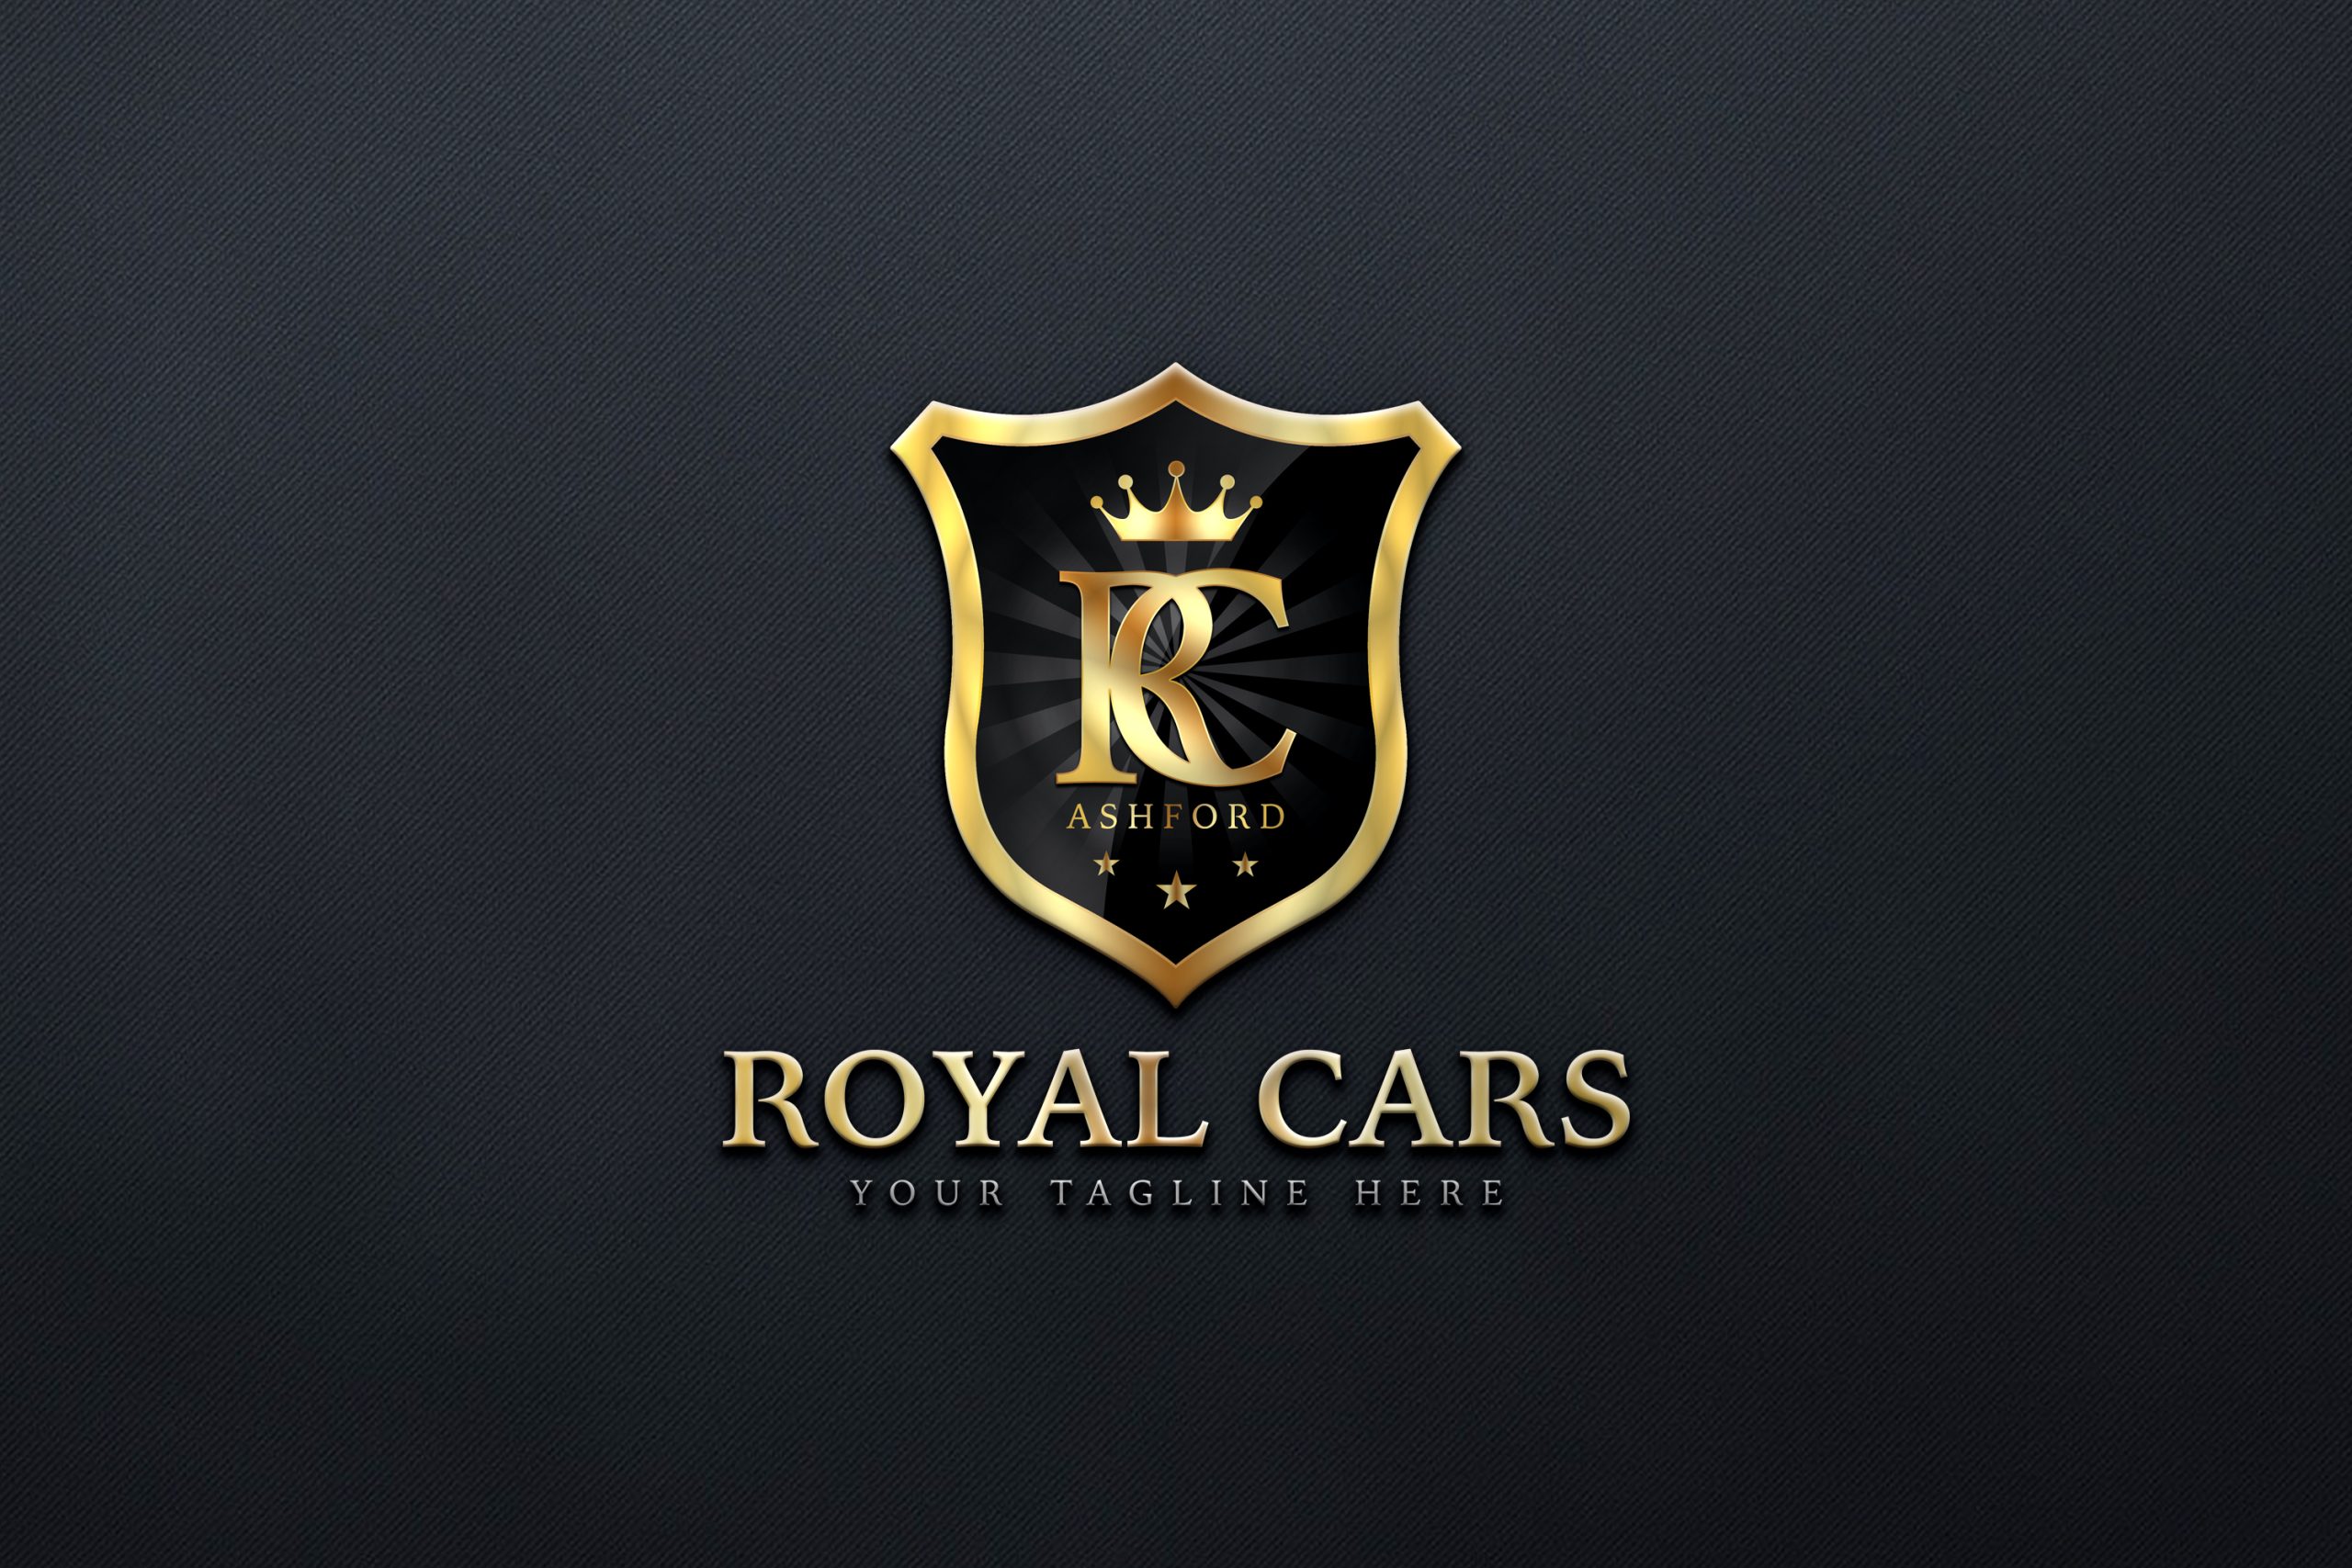 Royal Cars Logo Design Free Download